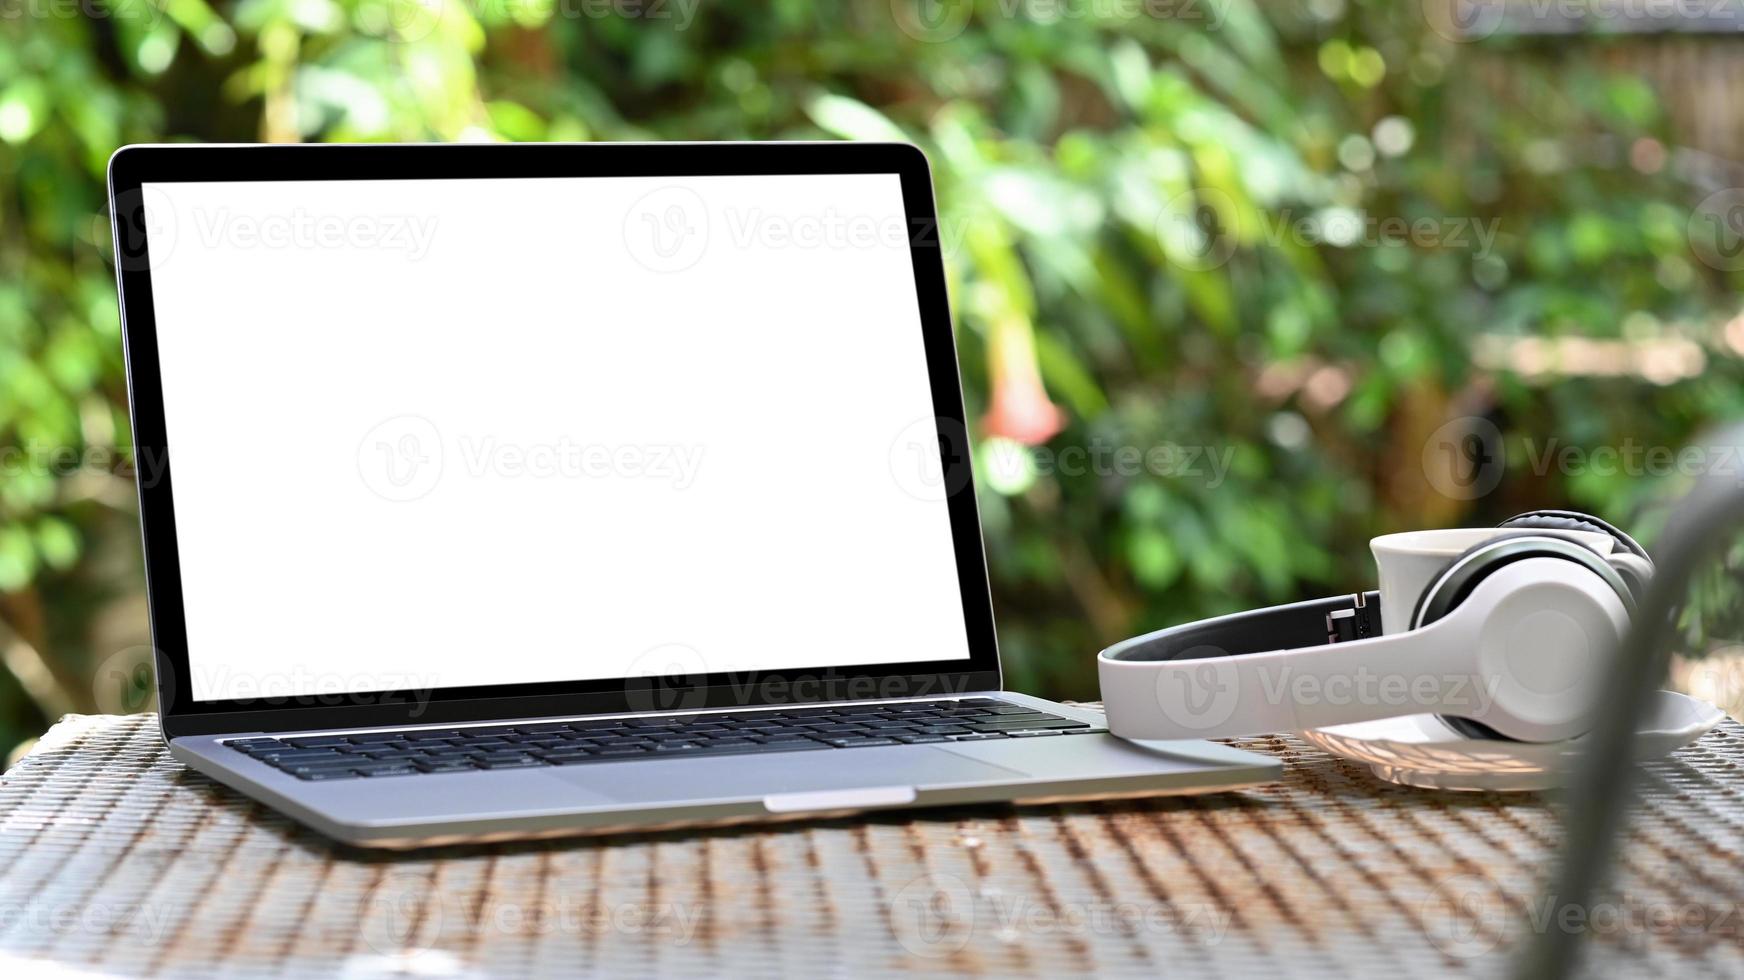 tela em branco do laptop maquete e fone de ouvido com a caneca de café na mesa de ferro, fundo verde da árvore. foto